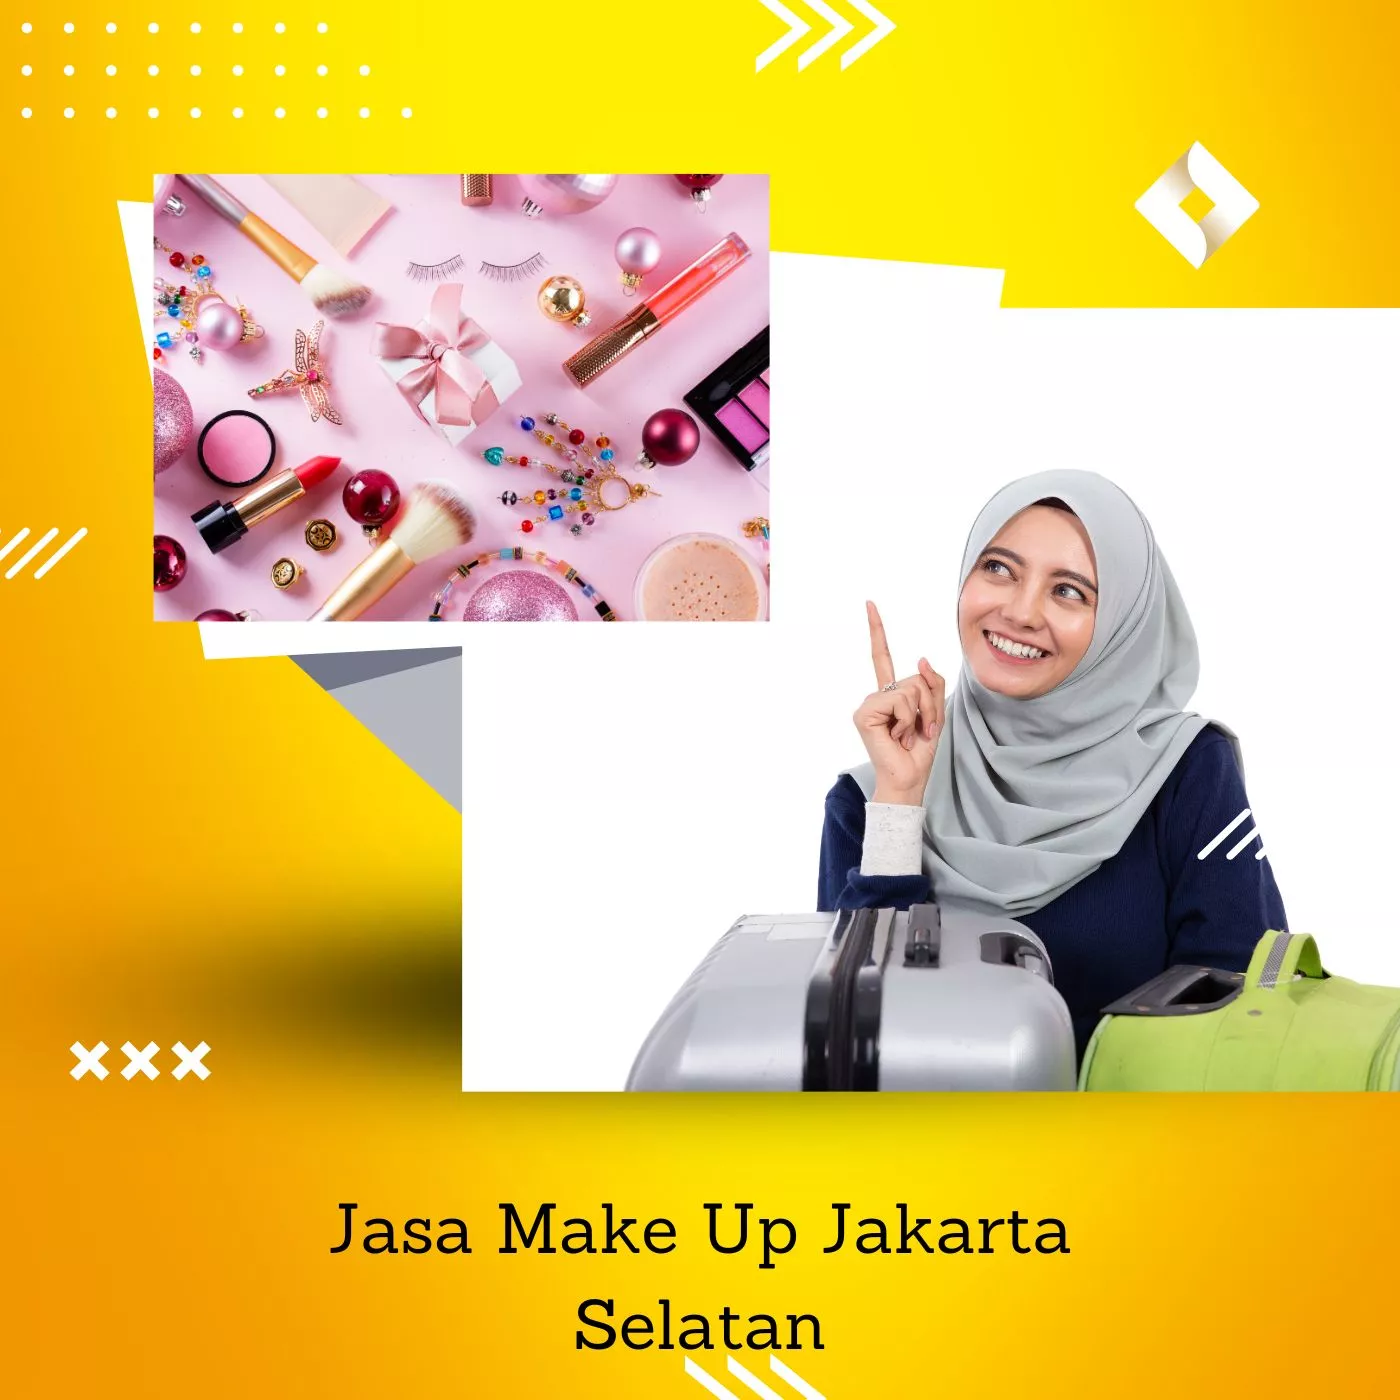 Jasa Make Up Jakarta Selatan 